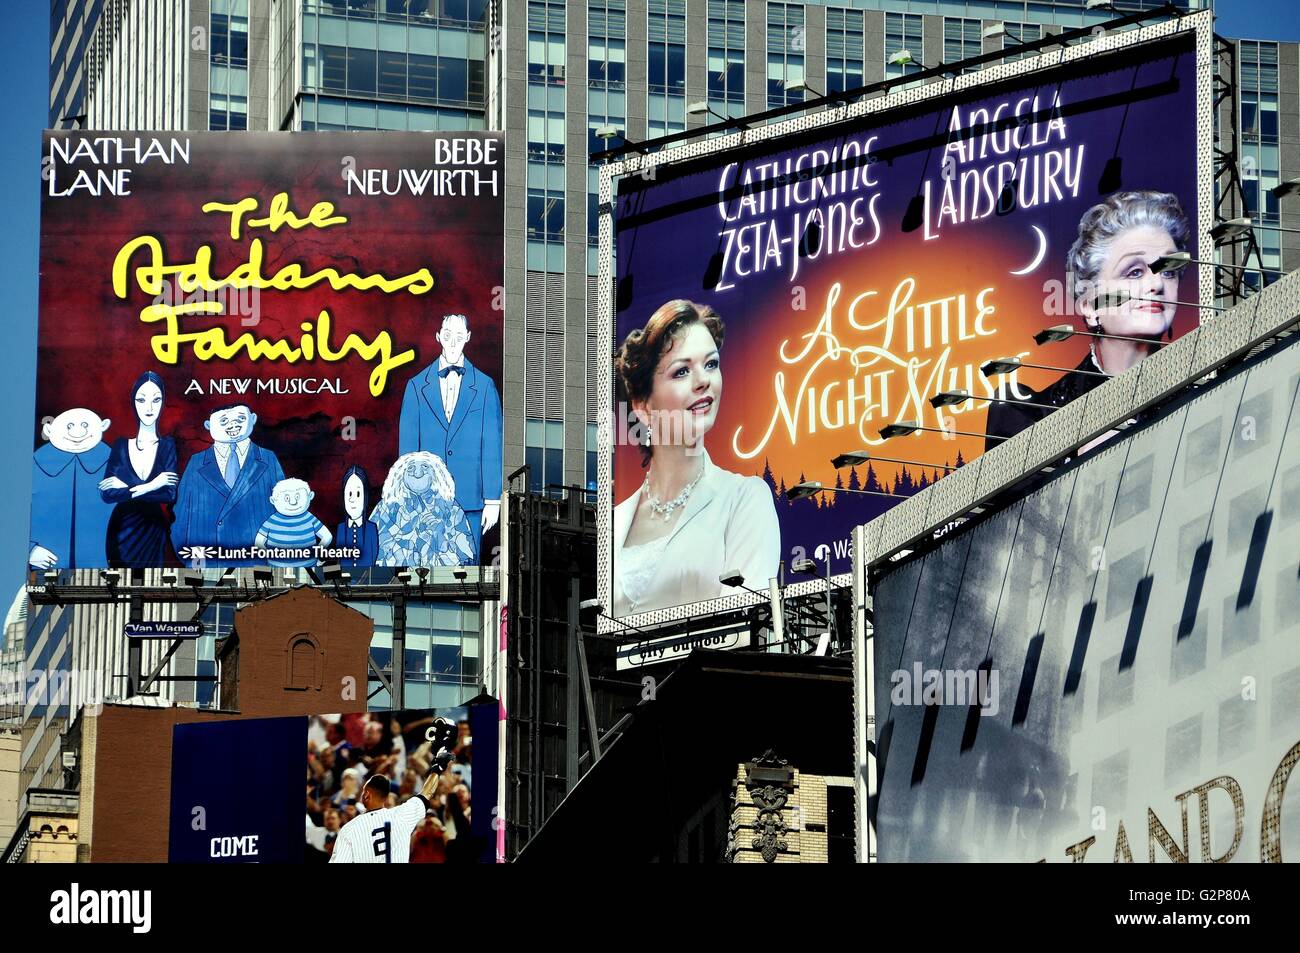 La ville de New York : les panneaux publicitaires pour la famille ADDAMS les comédies musicales de Broadway et un peu de musique de nuit à Times Square Banque D'Images